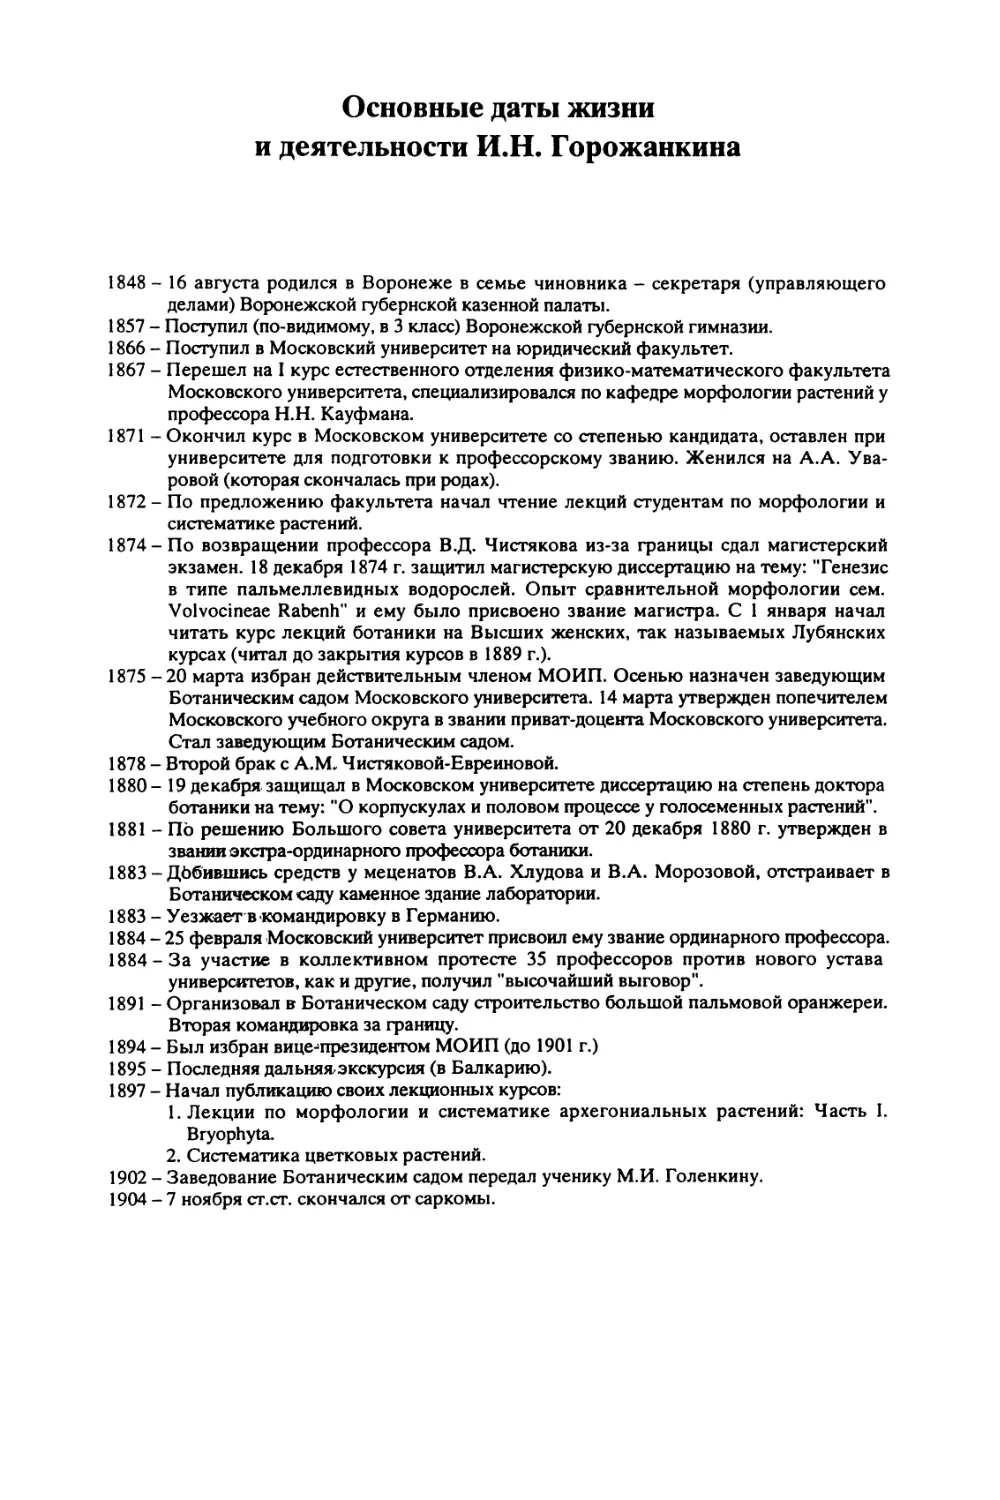 Основные даты жизни и деятельности И.Н. Горожанкина